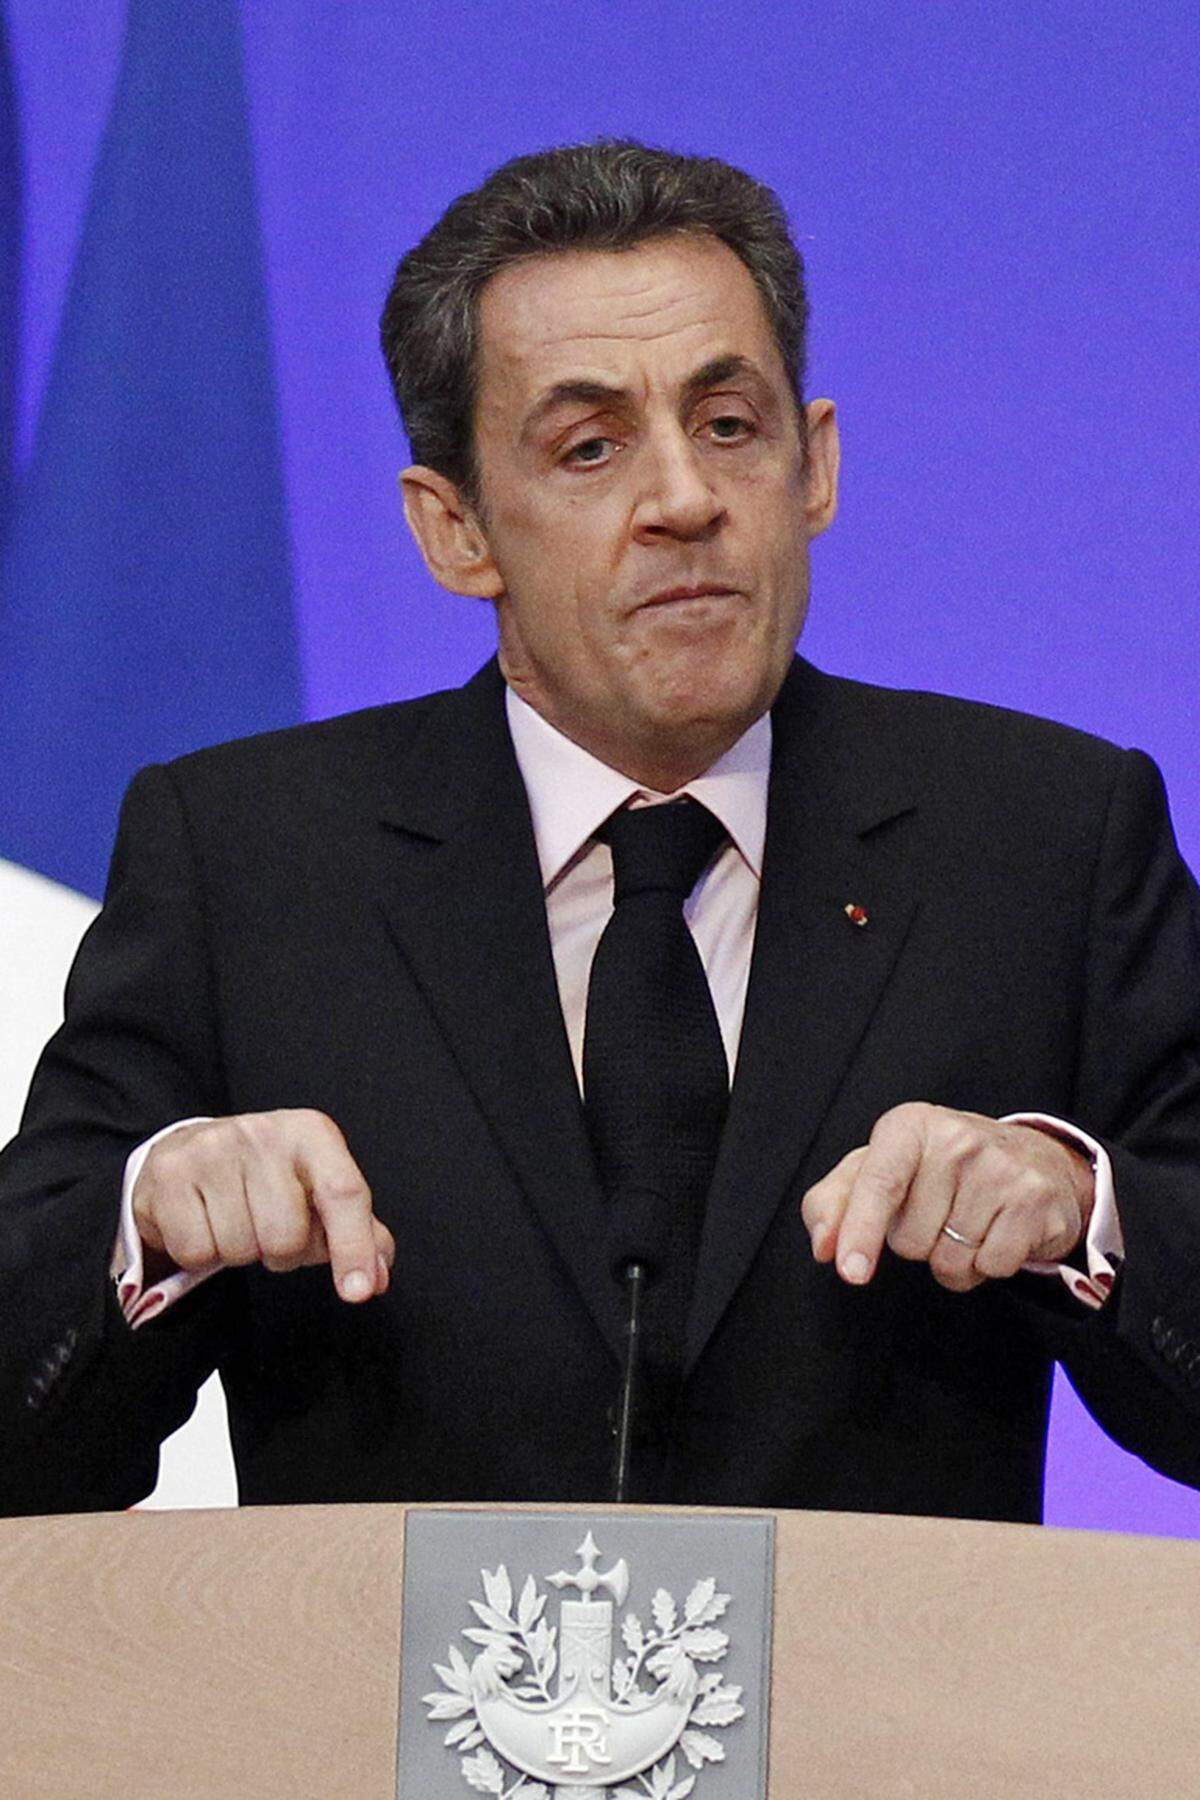 Die nächste Peinlichkeit folgte auf dem Fuß, als Sarkozy über Griechenlands Ex-Ministerpräsident Giorgos Papandreou zu schimpfen begann. Dieser sei "verrückt" und "depressiv". Das war aber erst der Anfang: "Er schert sich um nichts, er ist ein ungewaschener Trottel" und "er hat uns den G-20-Gipfel ruiniert", so der französische Präsident.